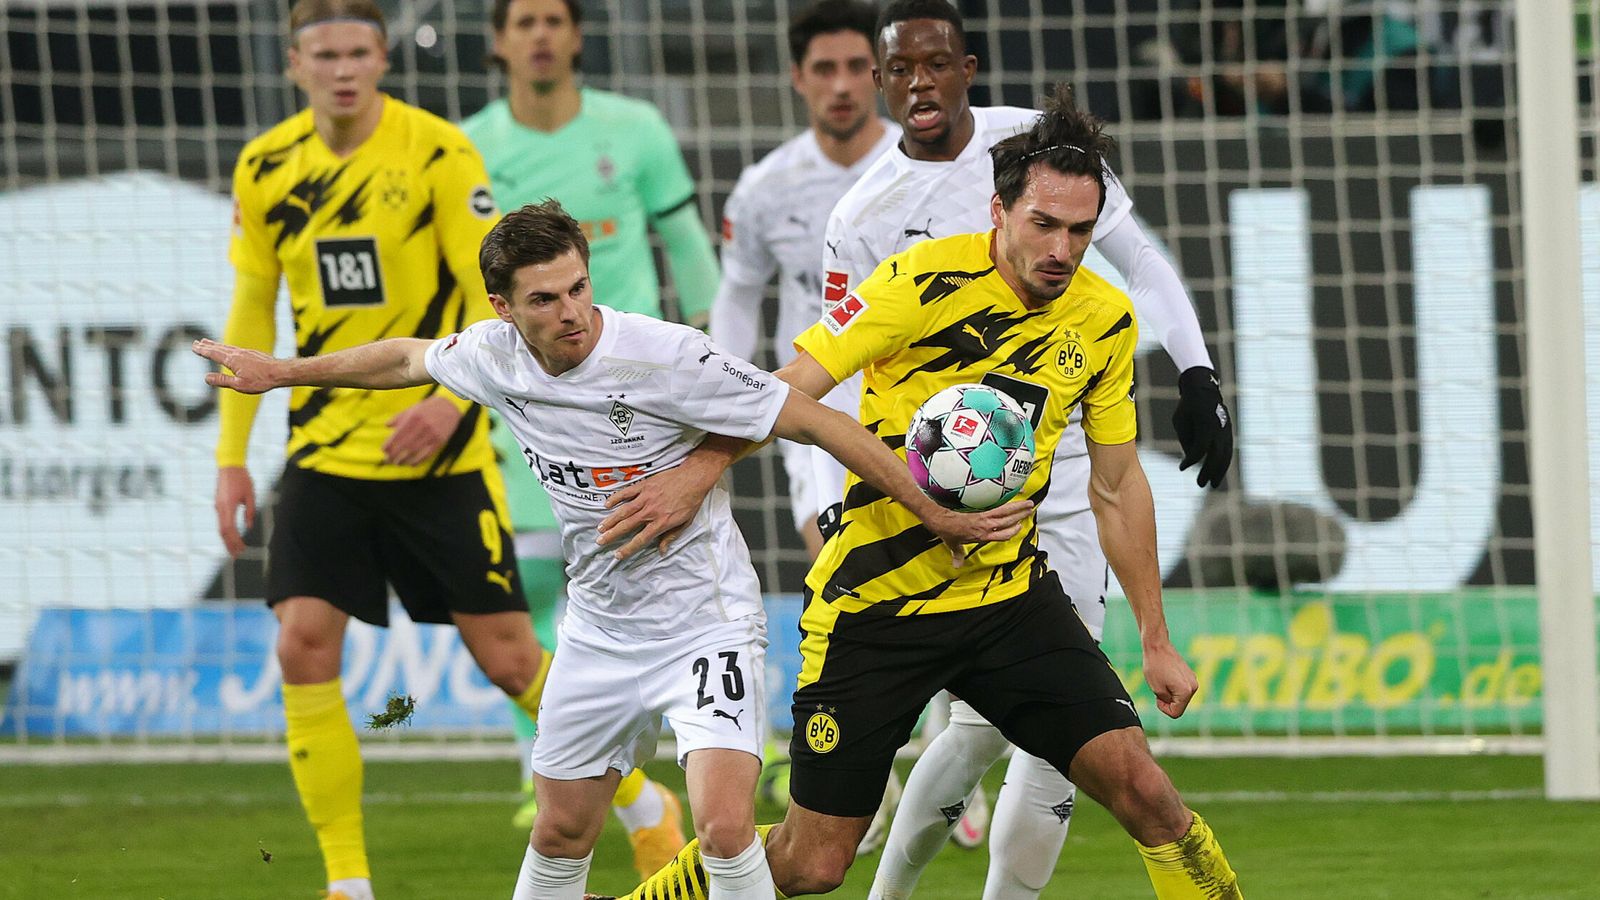 Gladbach Gegen Dortmund Live Im Tv Stream Ubertragung Auf Sky Fussball News Sky Sport